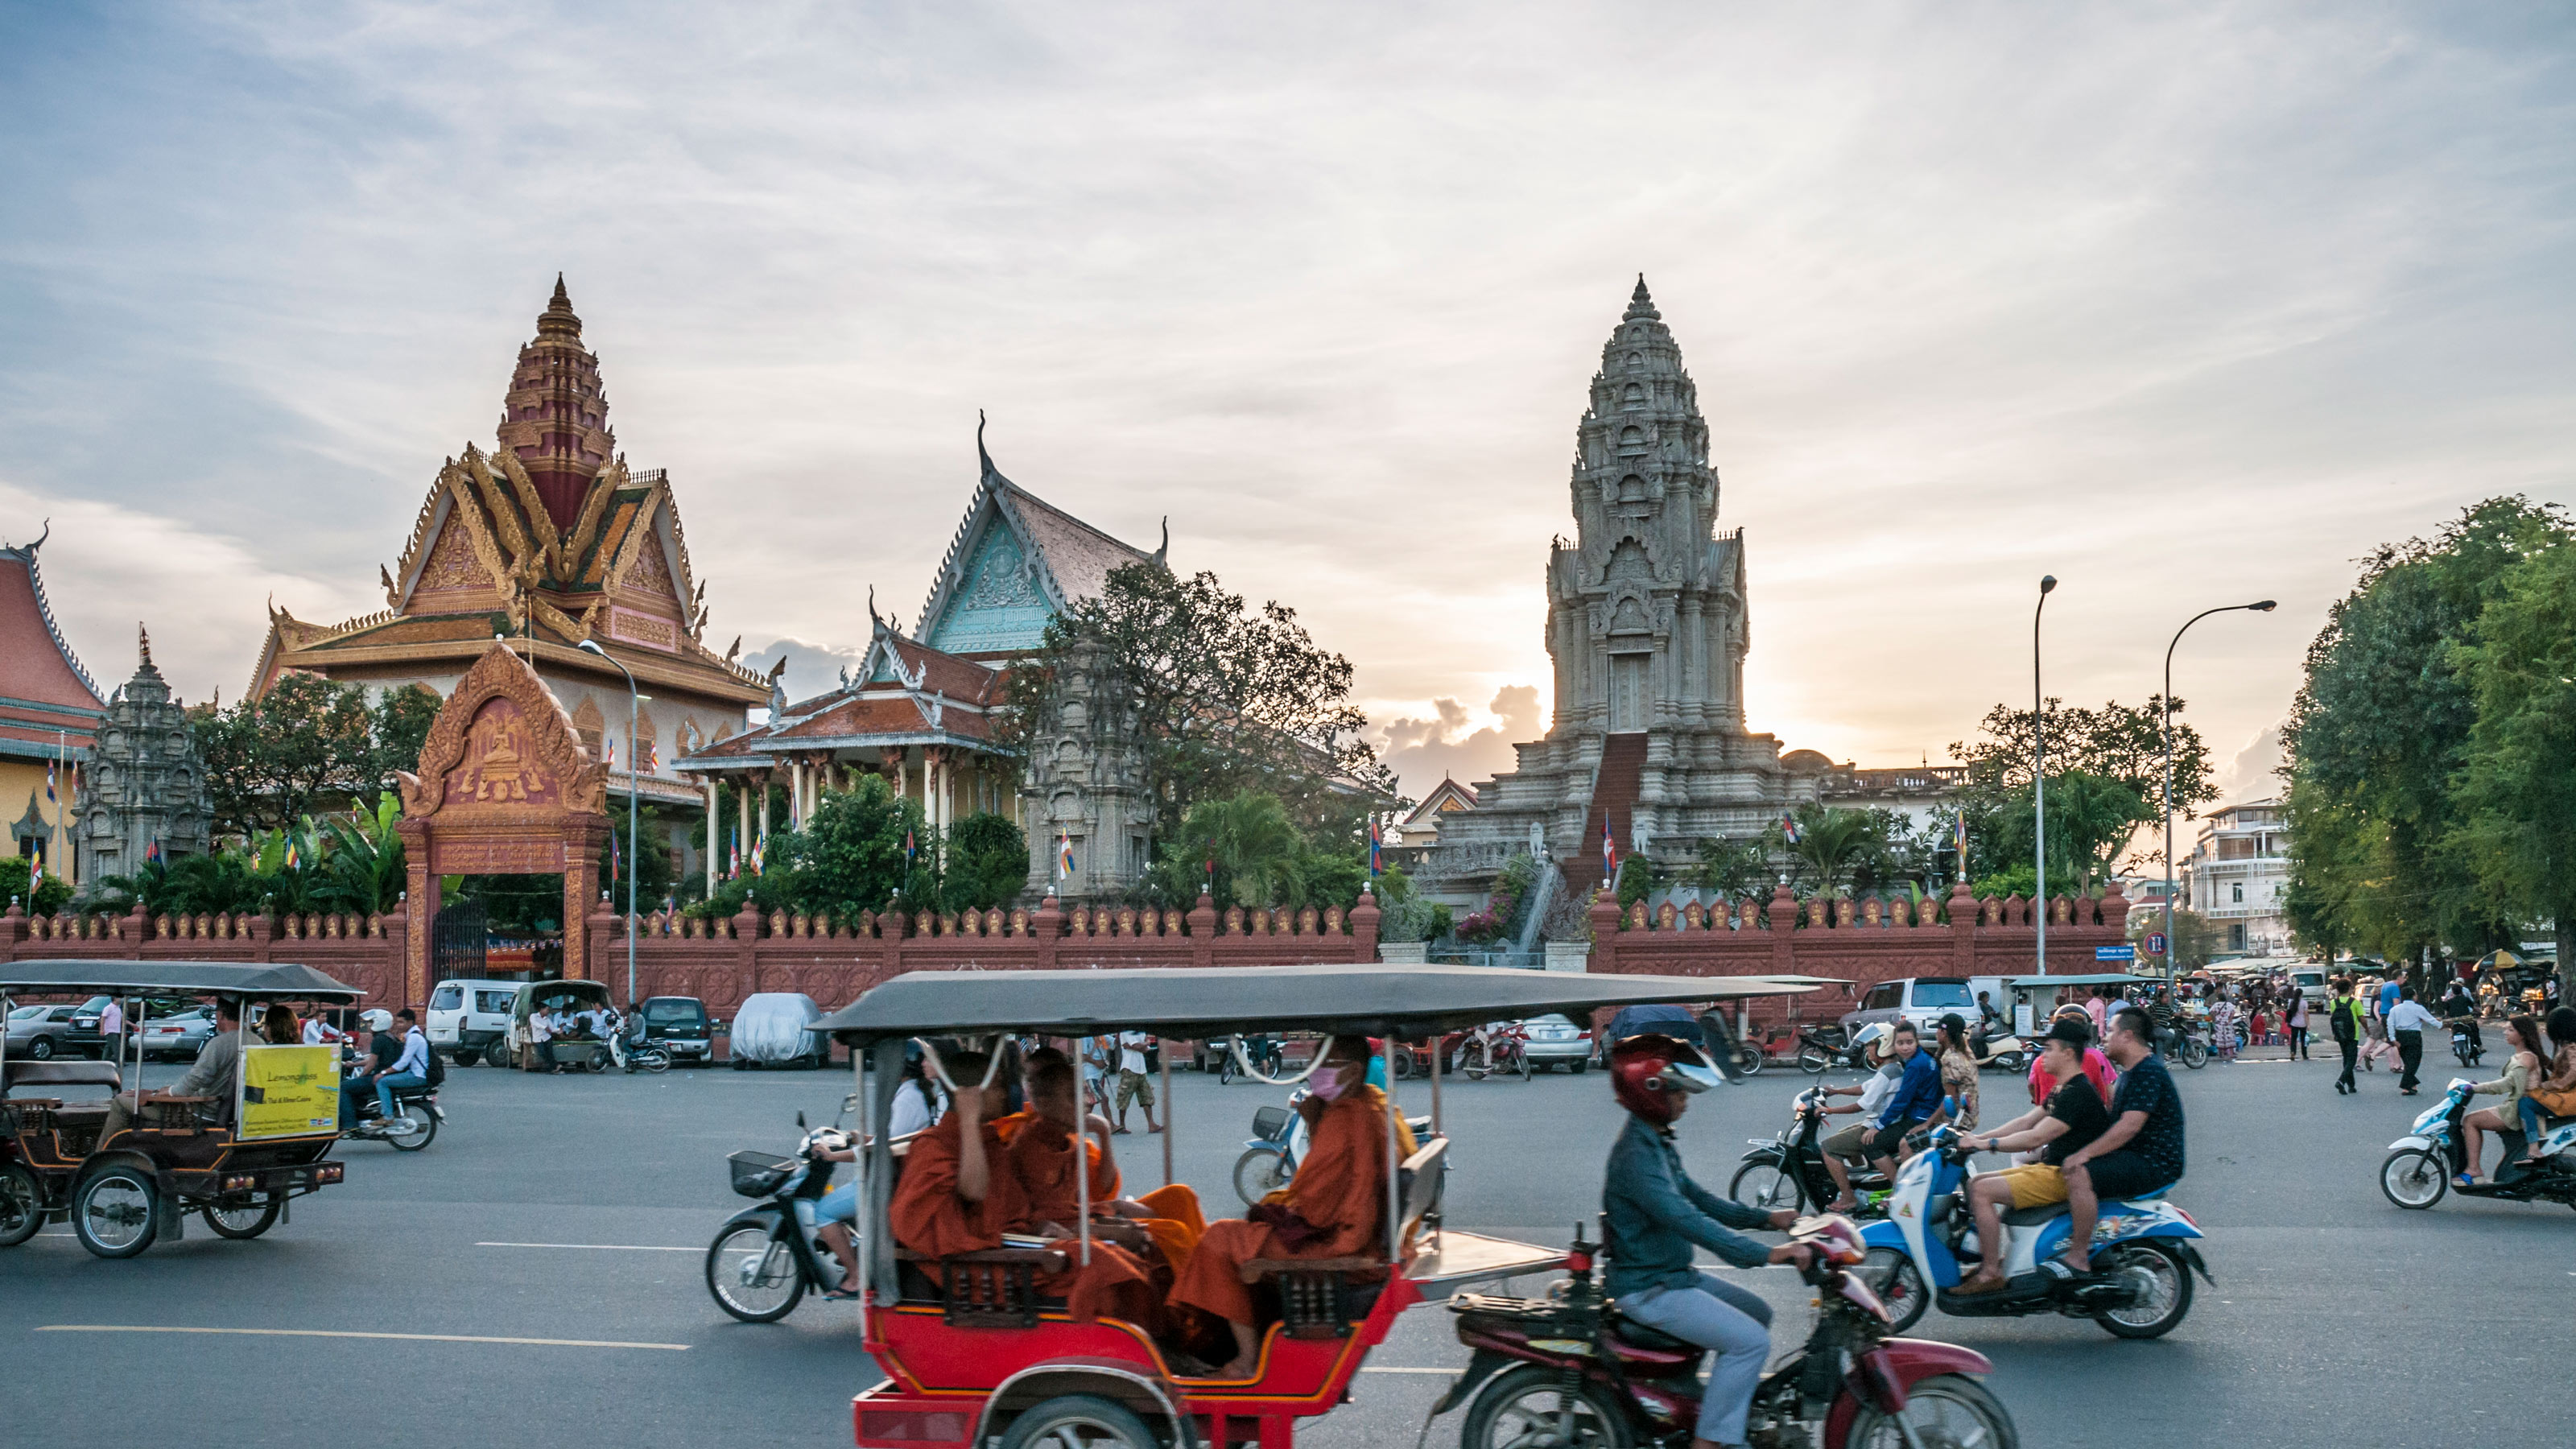 負債659憶円 不動産界のダイハード がカンボジアに飛び込んだワケ コロナ後にマネーは必ず暴れ出す President Online プレジデントオンライン